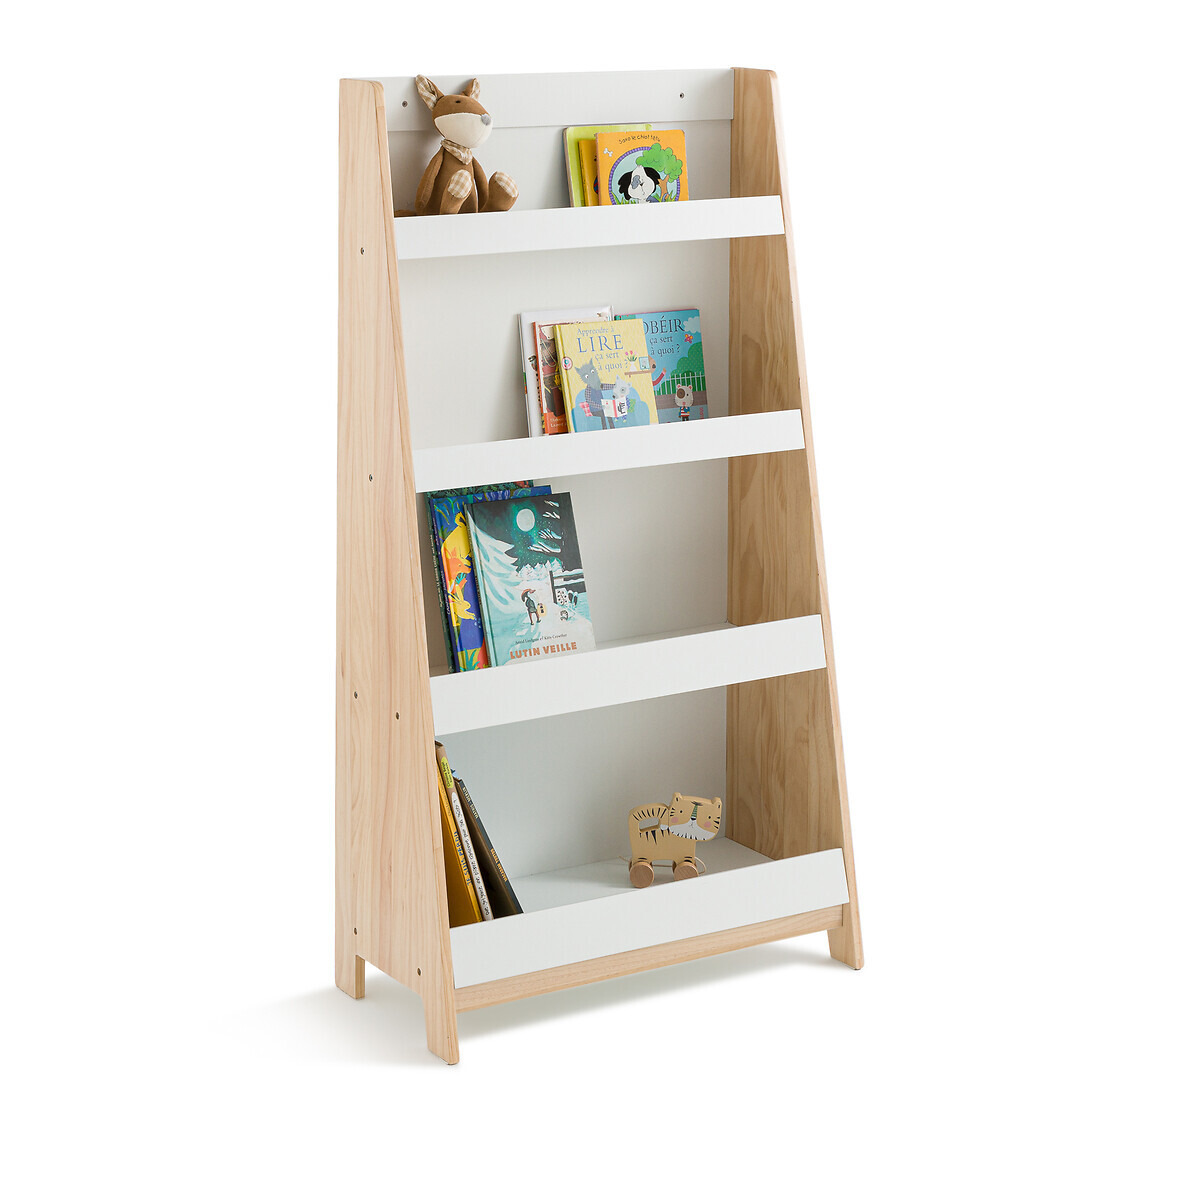 Sueno Child's Bookcase - image 1